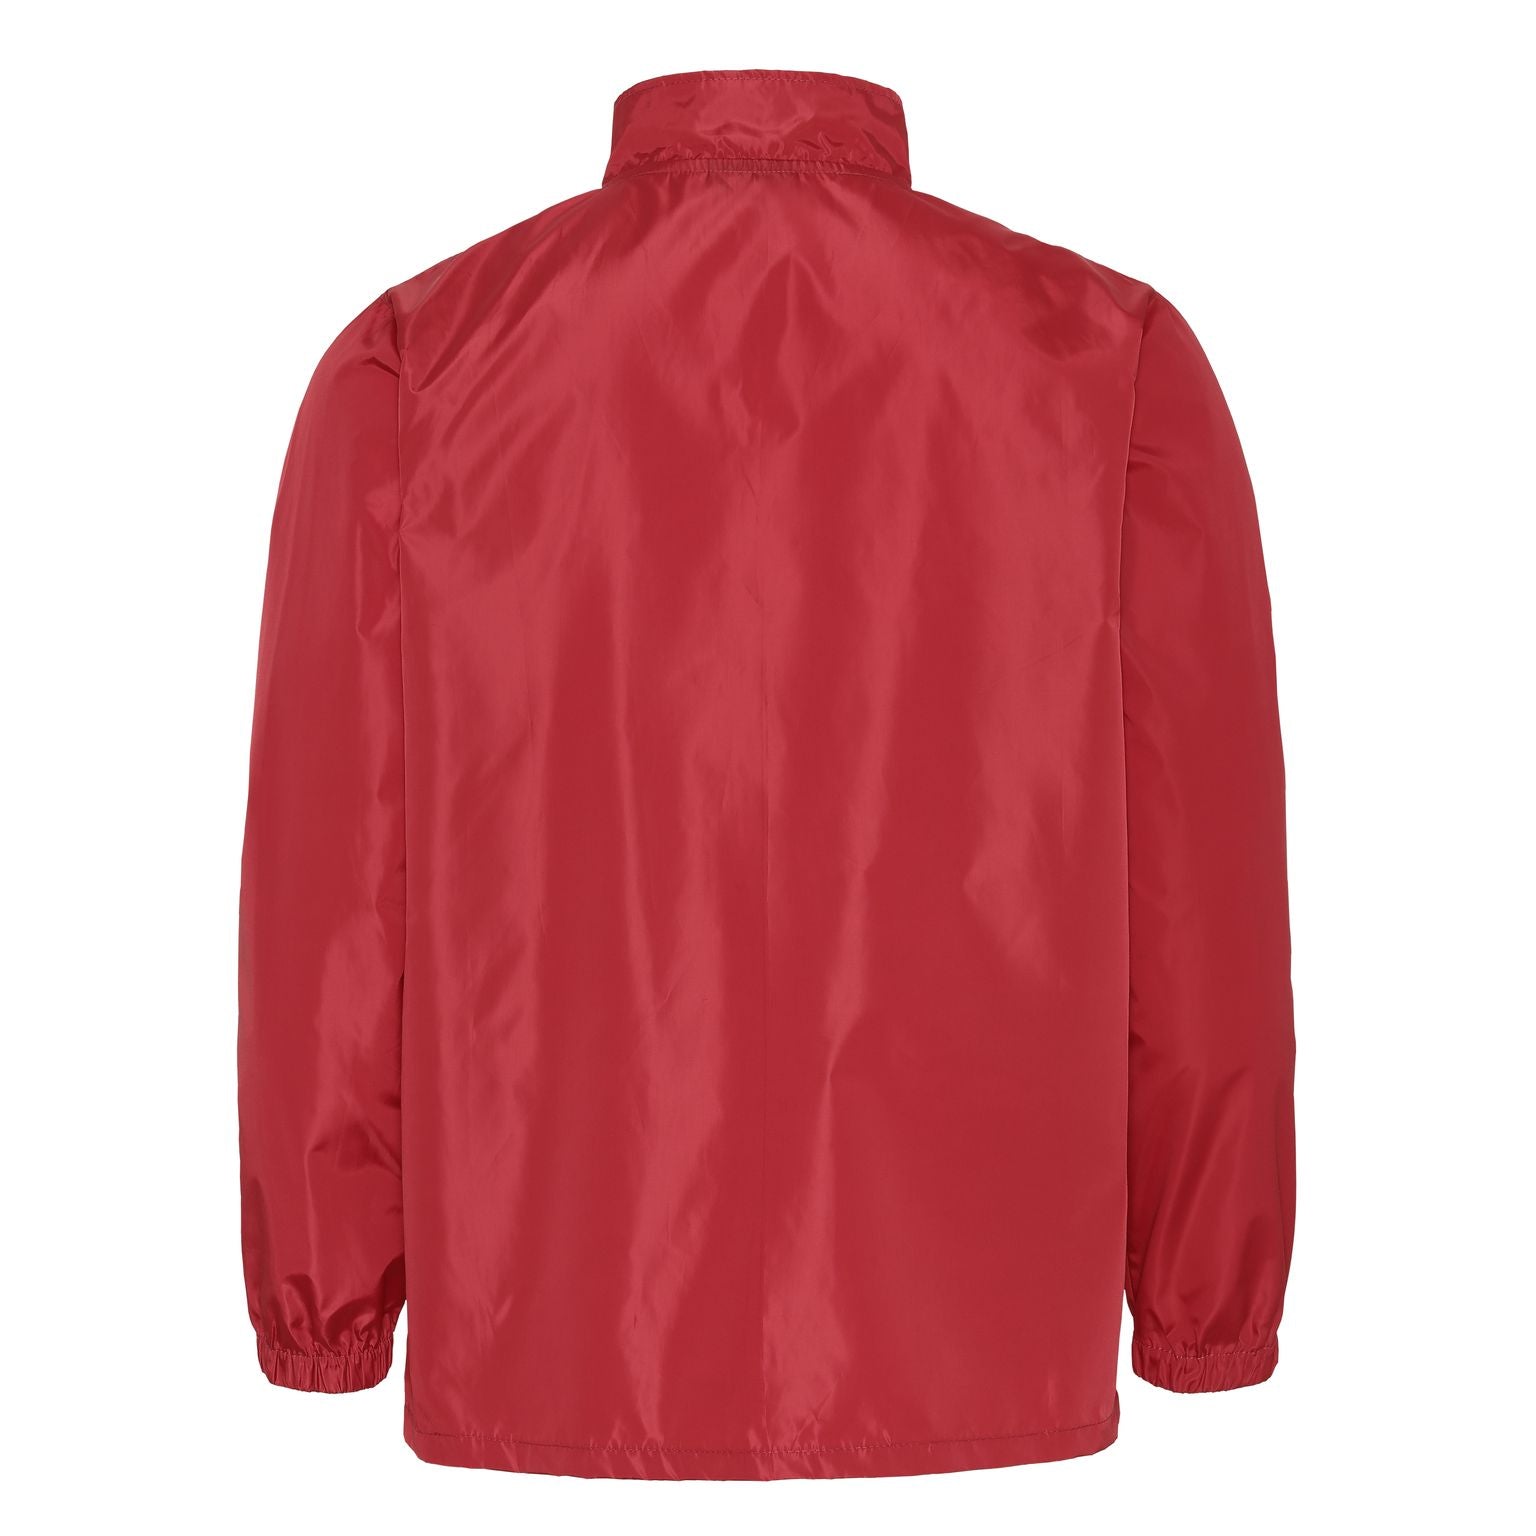 Waterproof red jacket